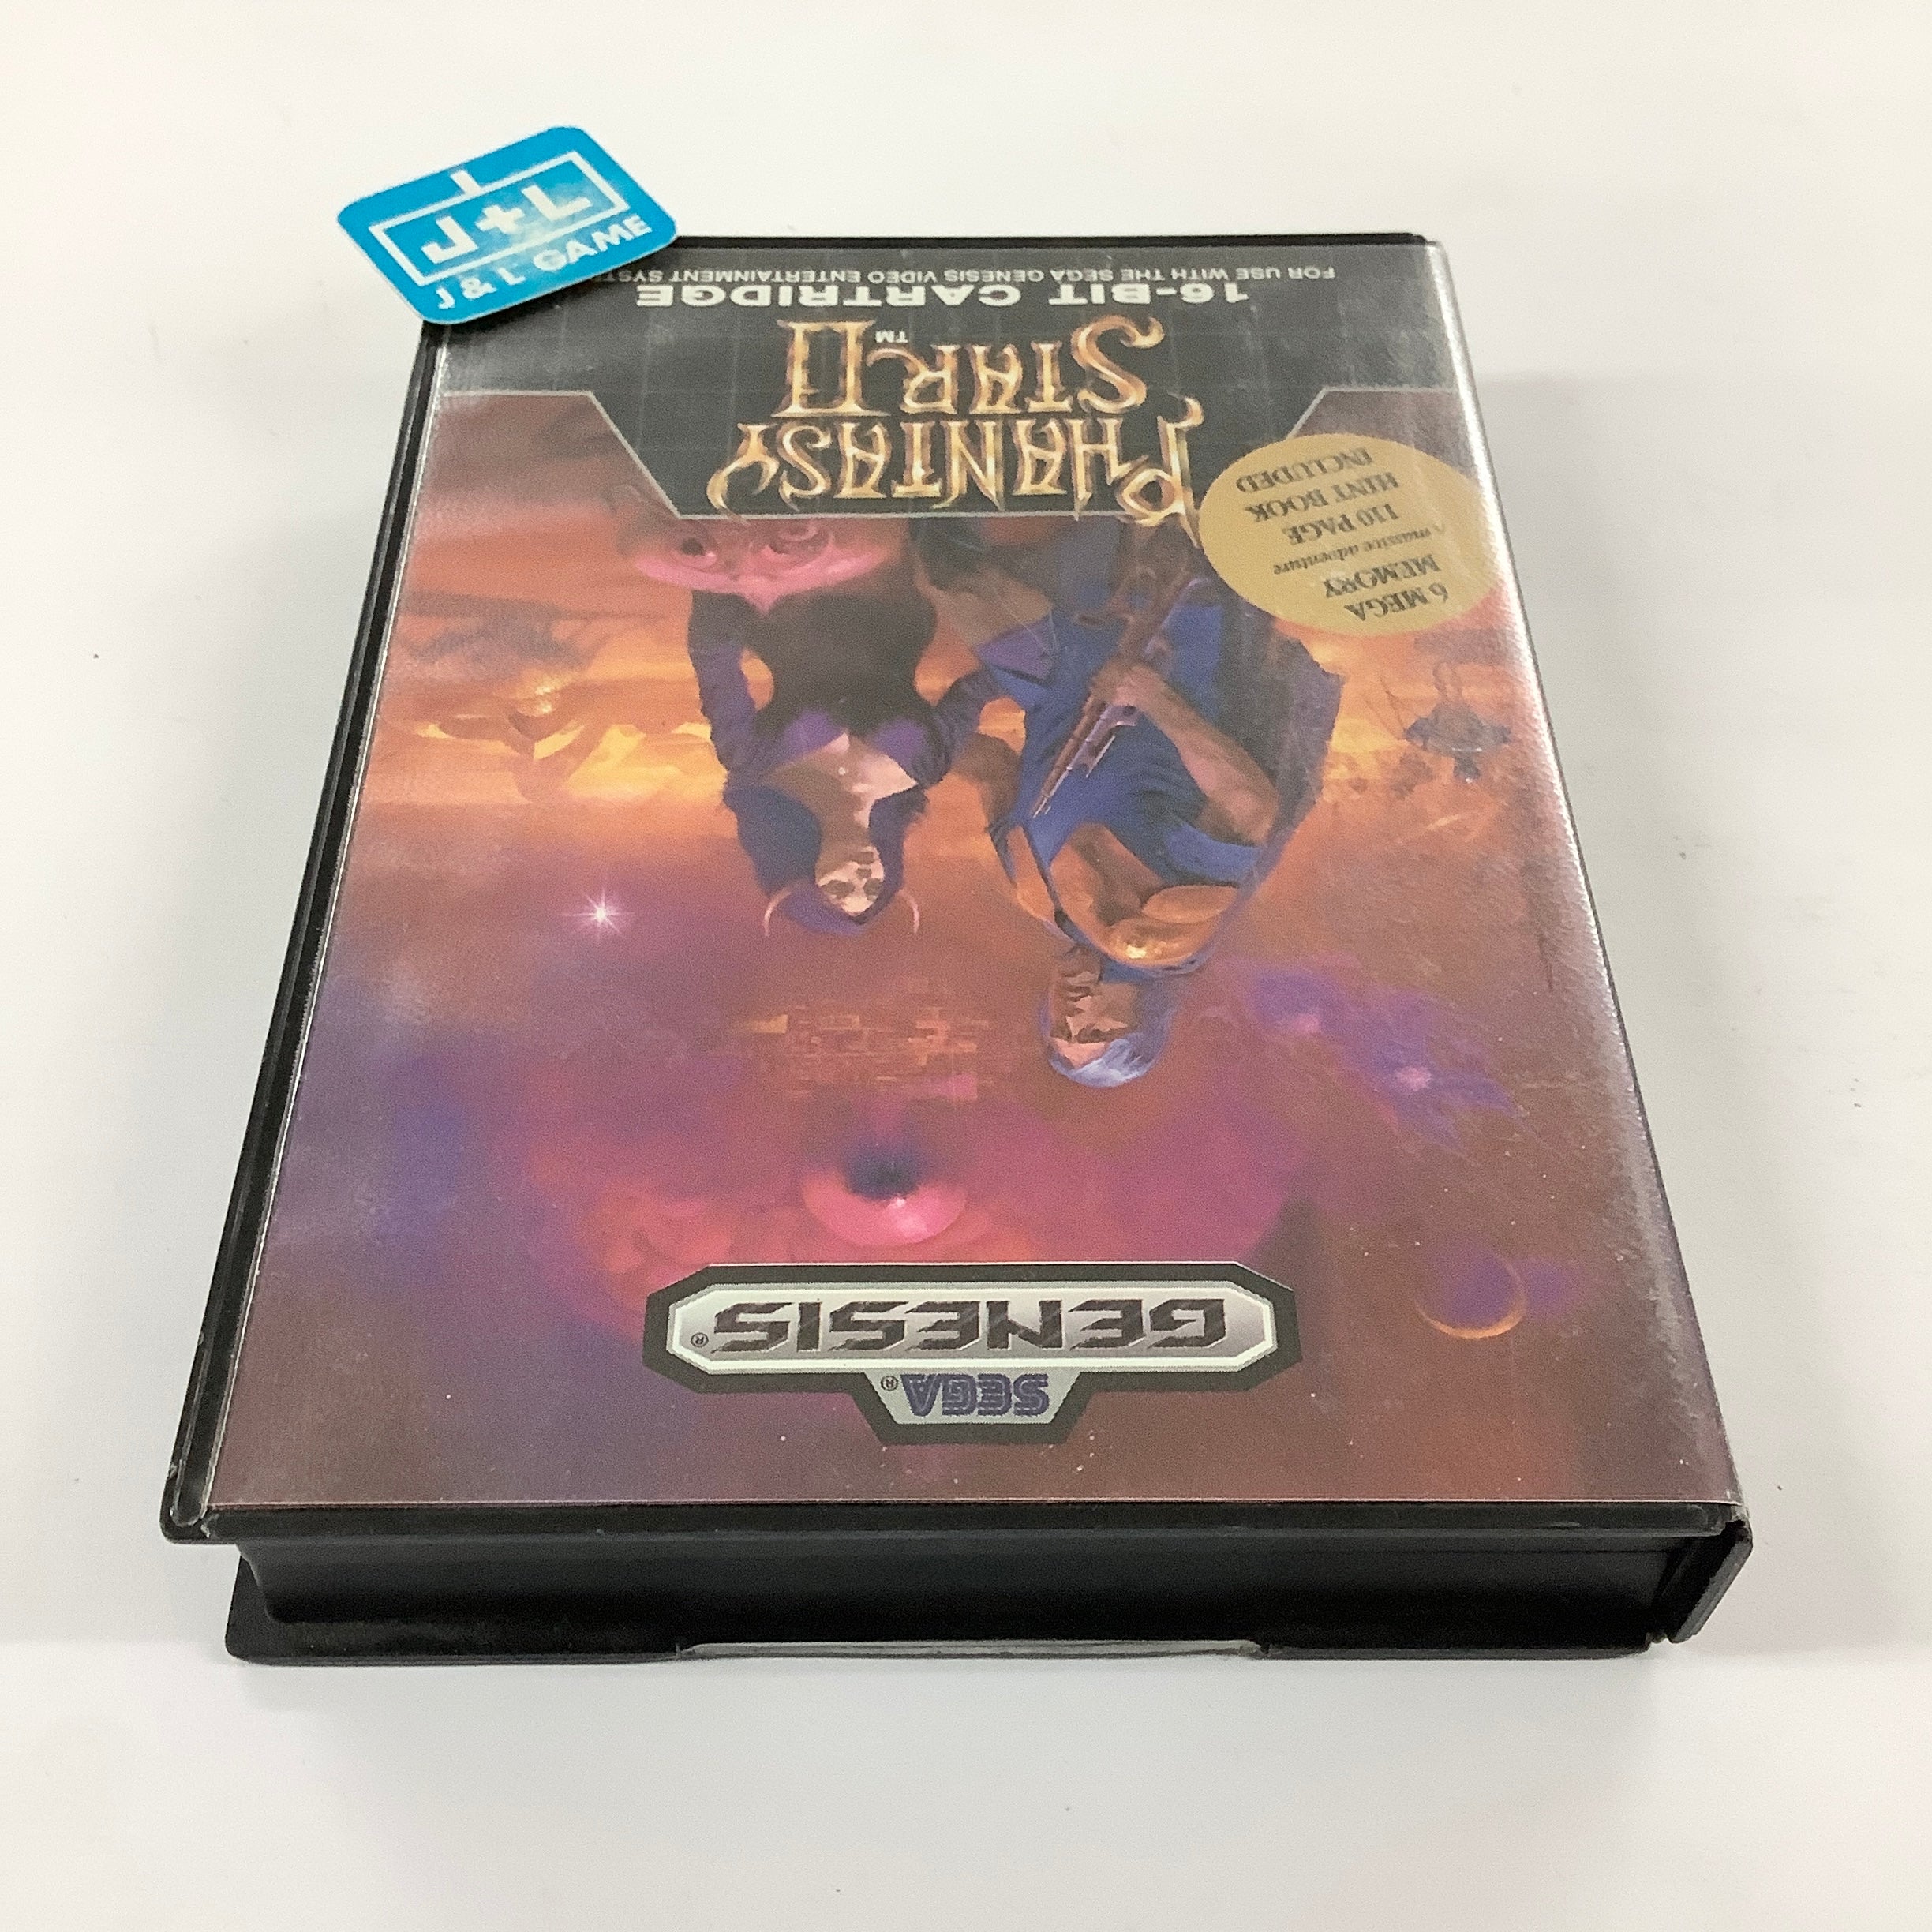 Phantasy Star II - (SG) SEGA Genesis [Pre-Owned] Video Games Sega   